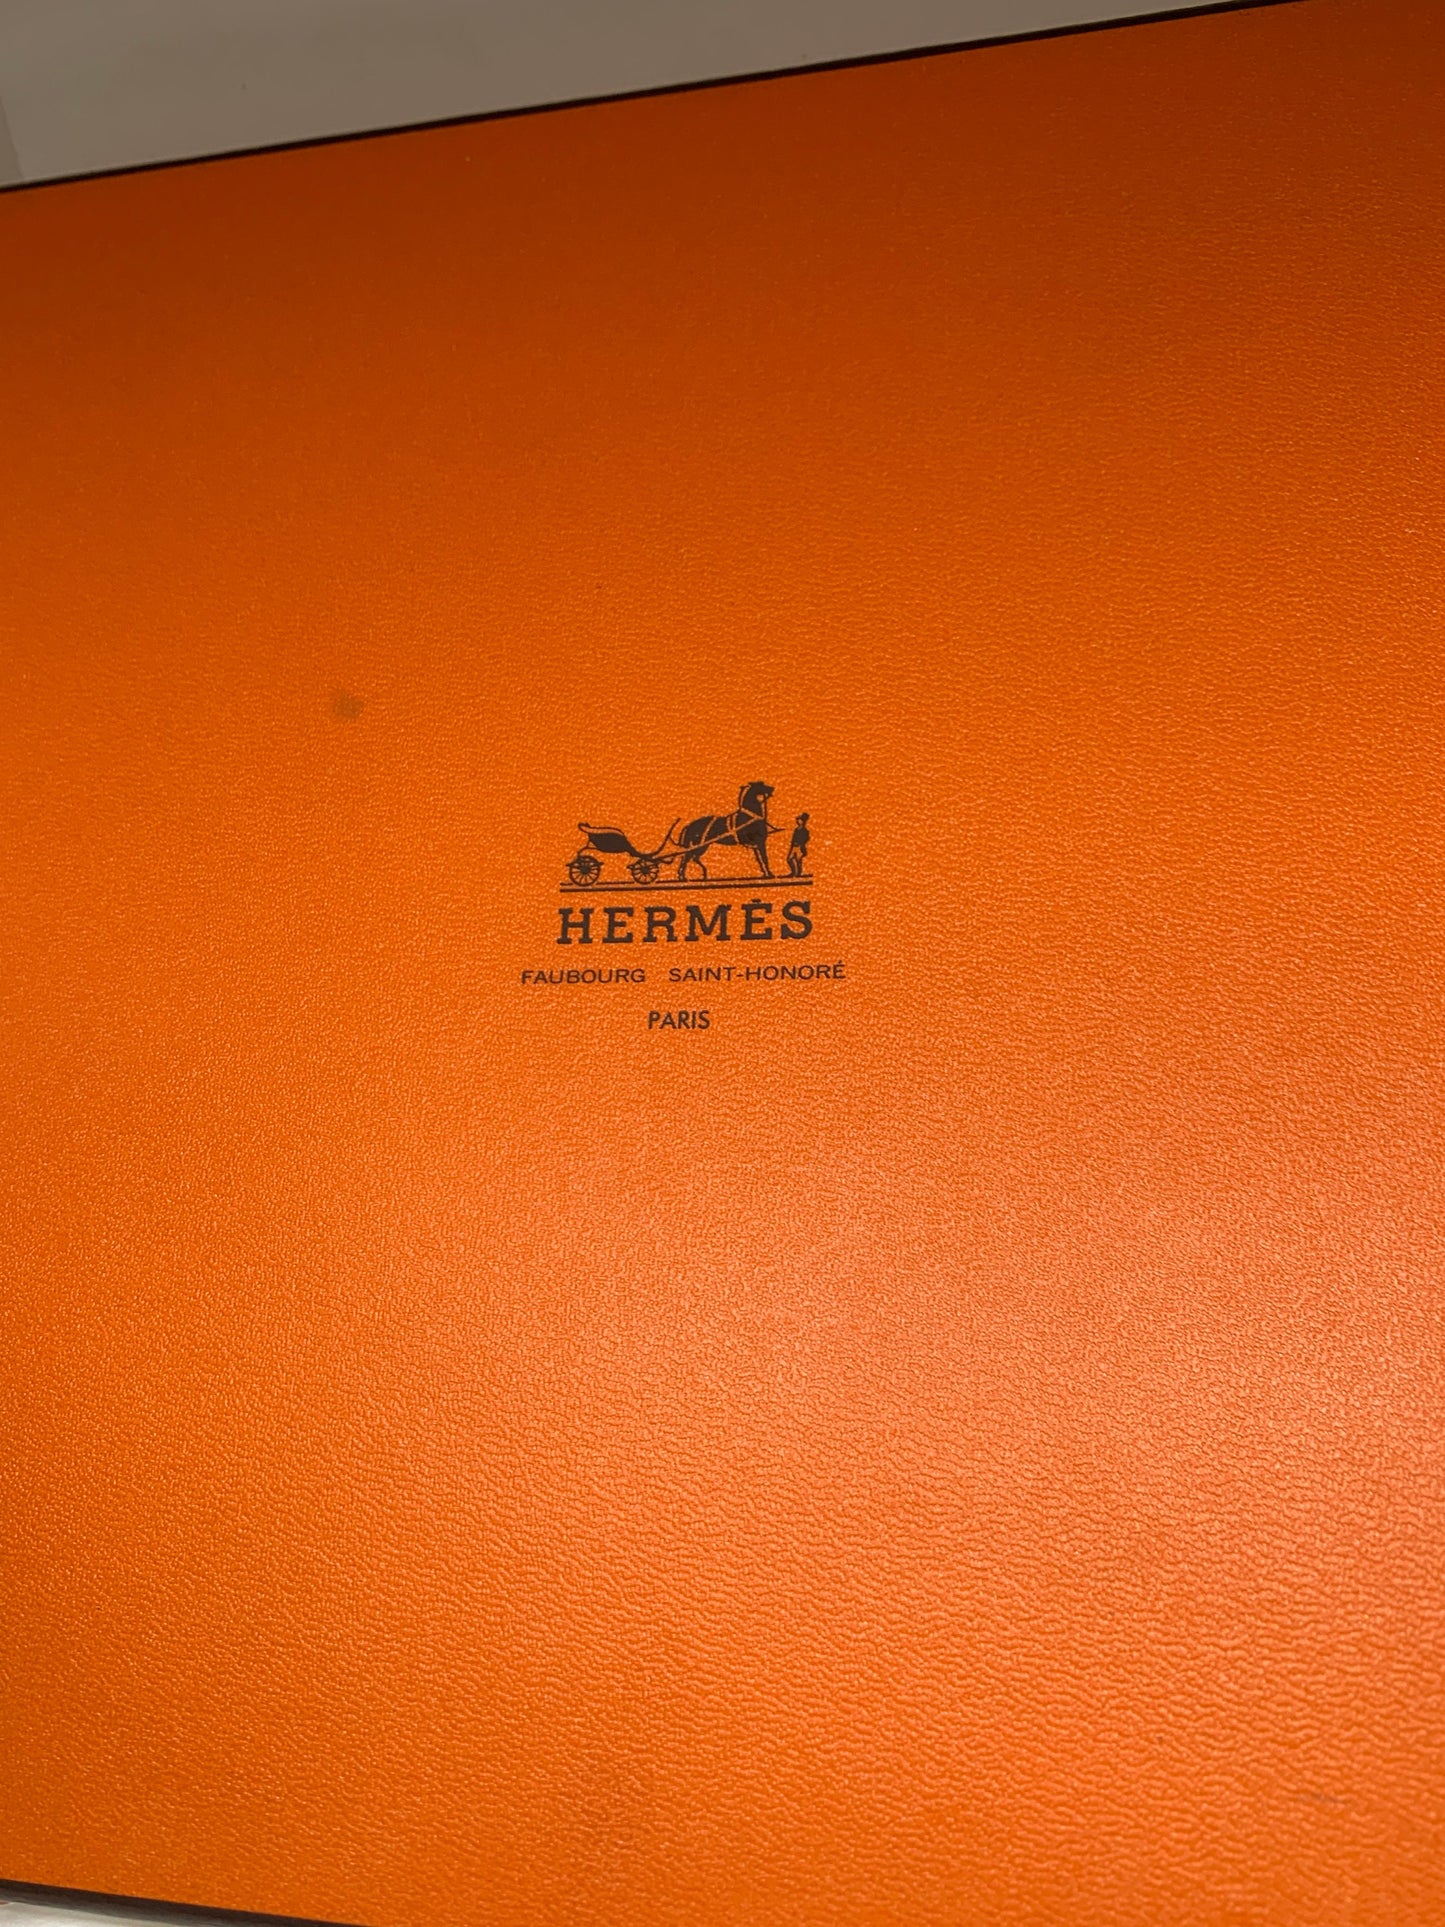 Hermés 禮品袋，橙色禮品袋，包裝，巴黎原創法式禮品盒，7.5”x 7.5” x1.5" 時尚腰帶盒禮品袋